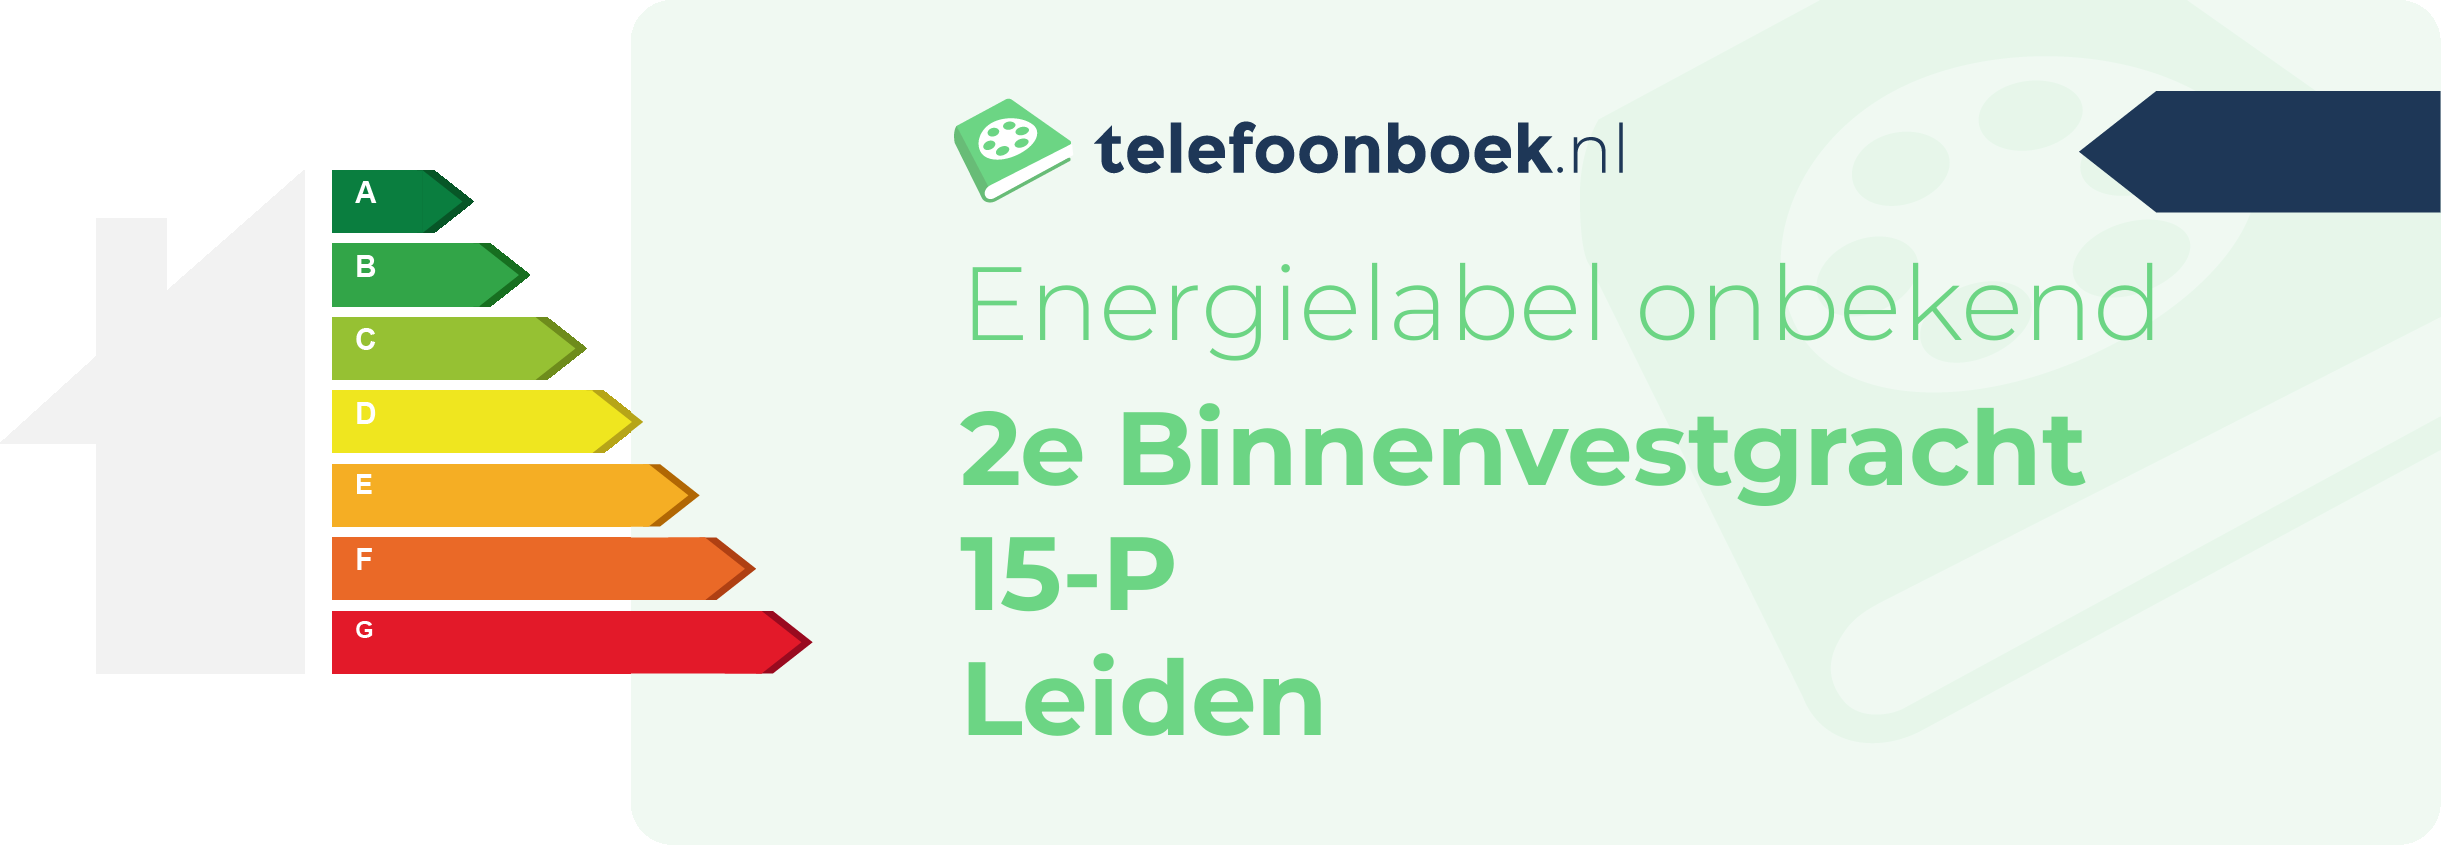 Energielabel 2e Binnenvestgracht 15-P Leiden